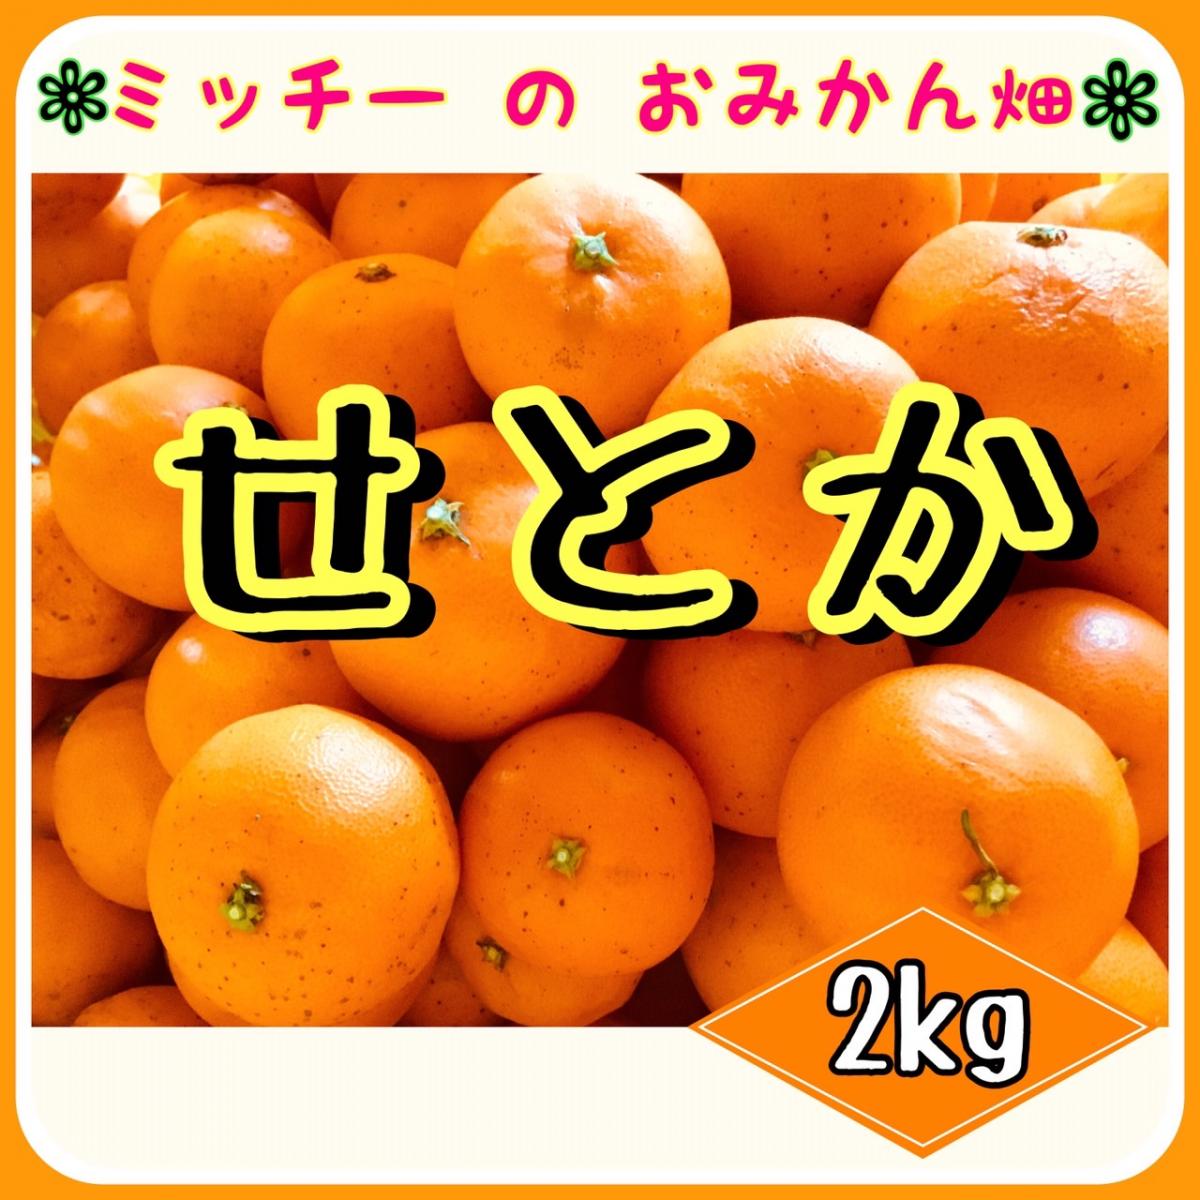 【四国 九州 本州のお客様用】《訳あり》フルーツ果物くだもの果実みかん柑橘《せとか/えひめ産》サムネイル